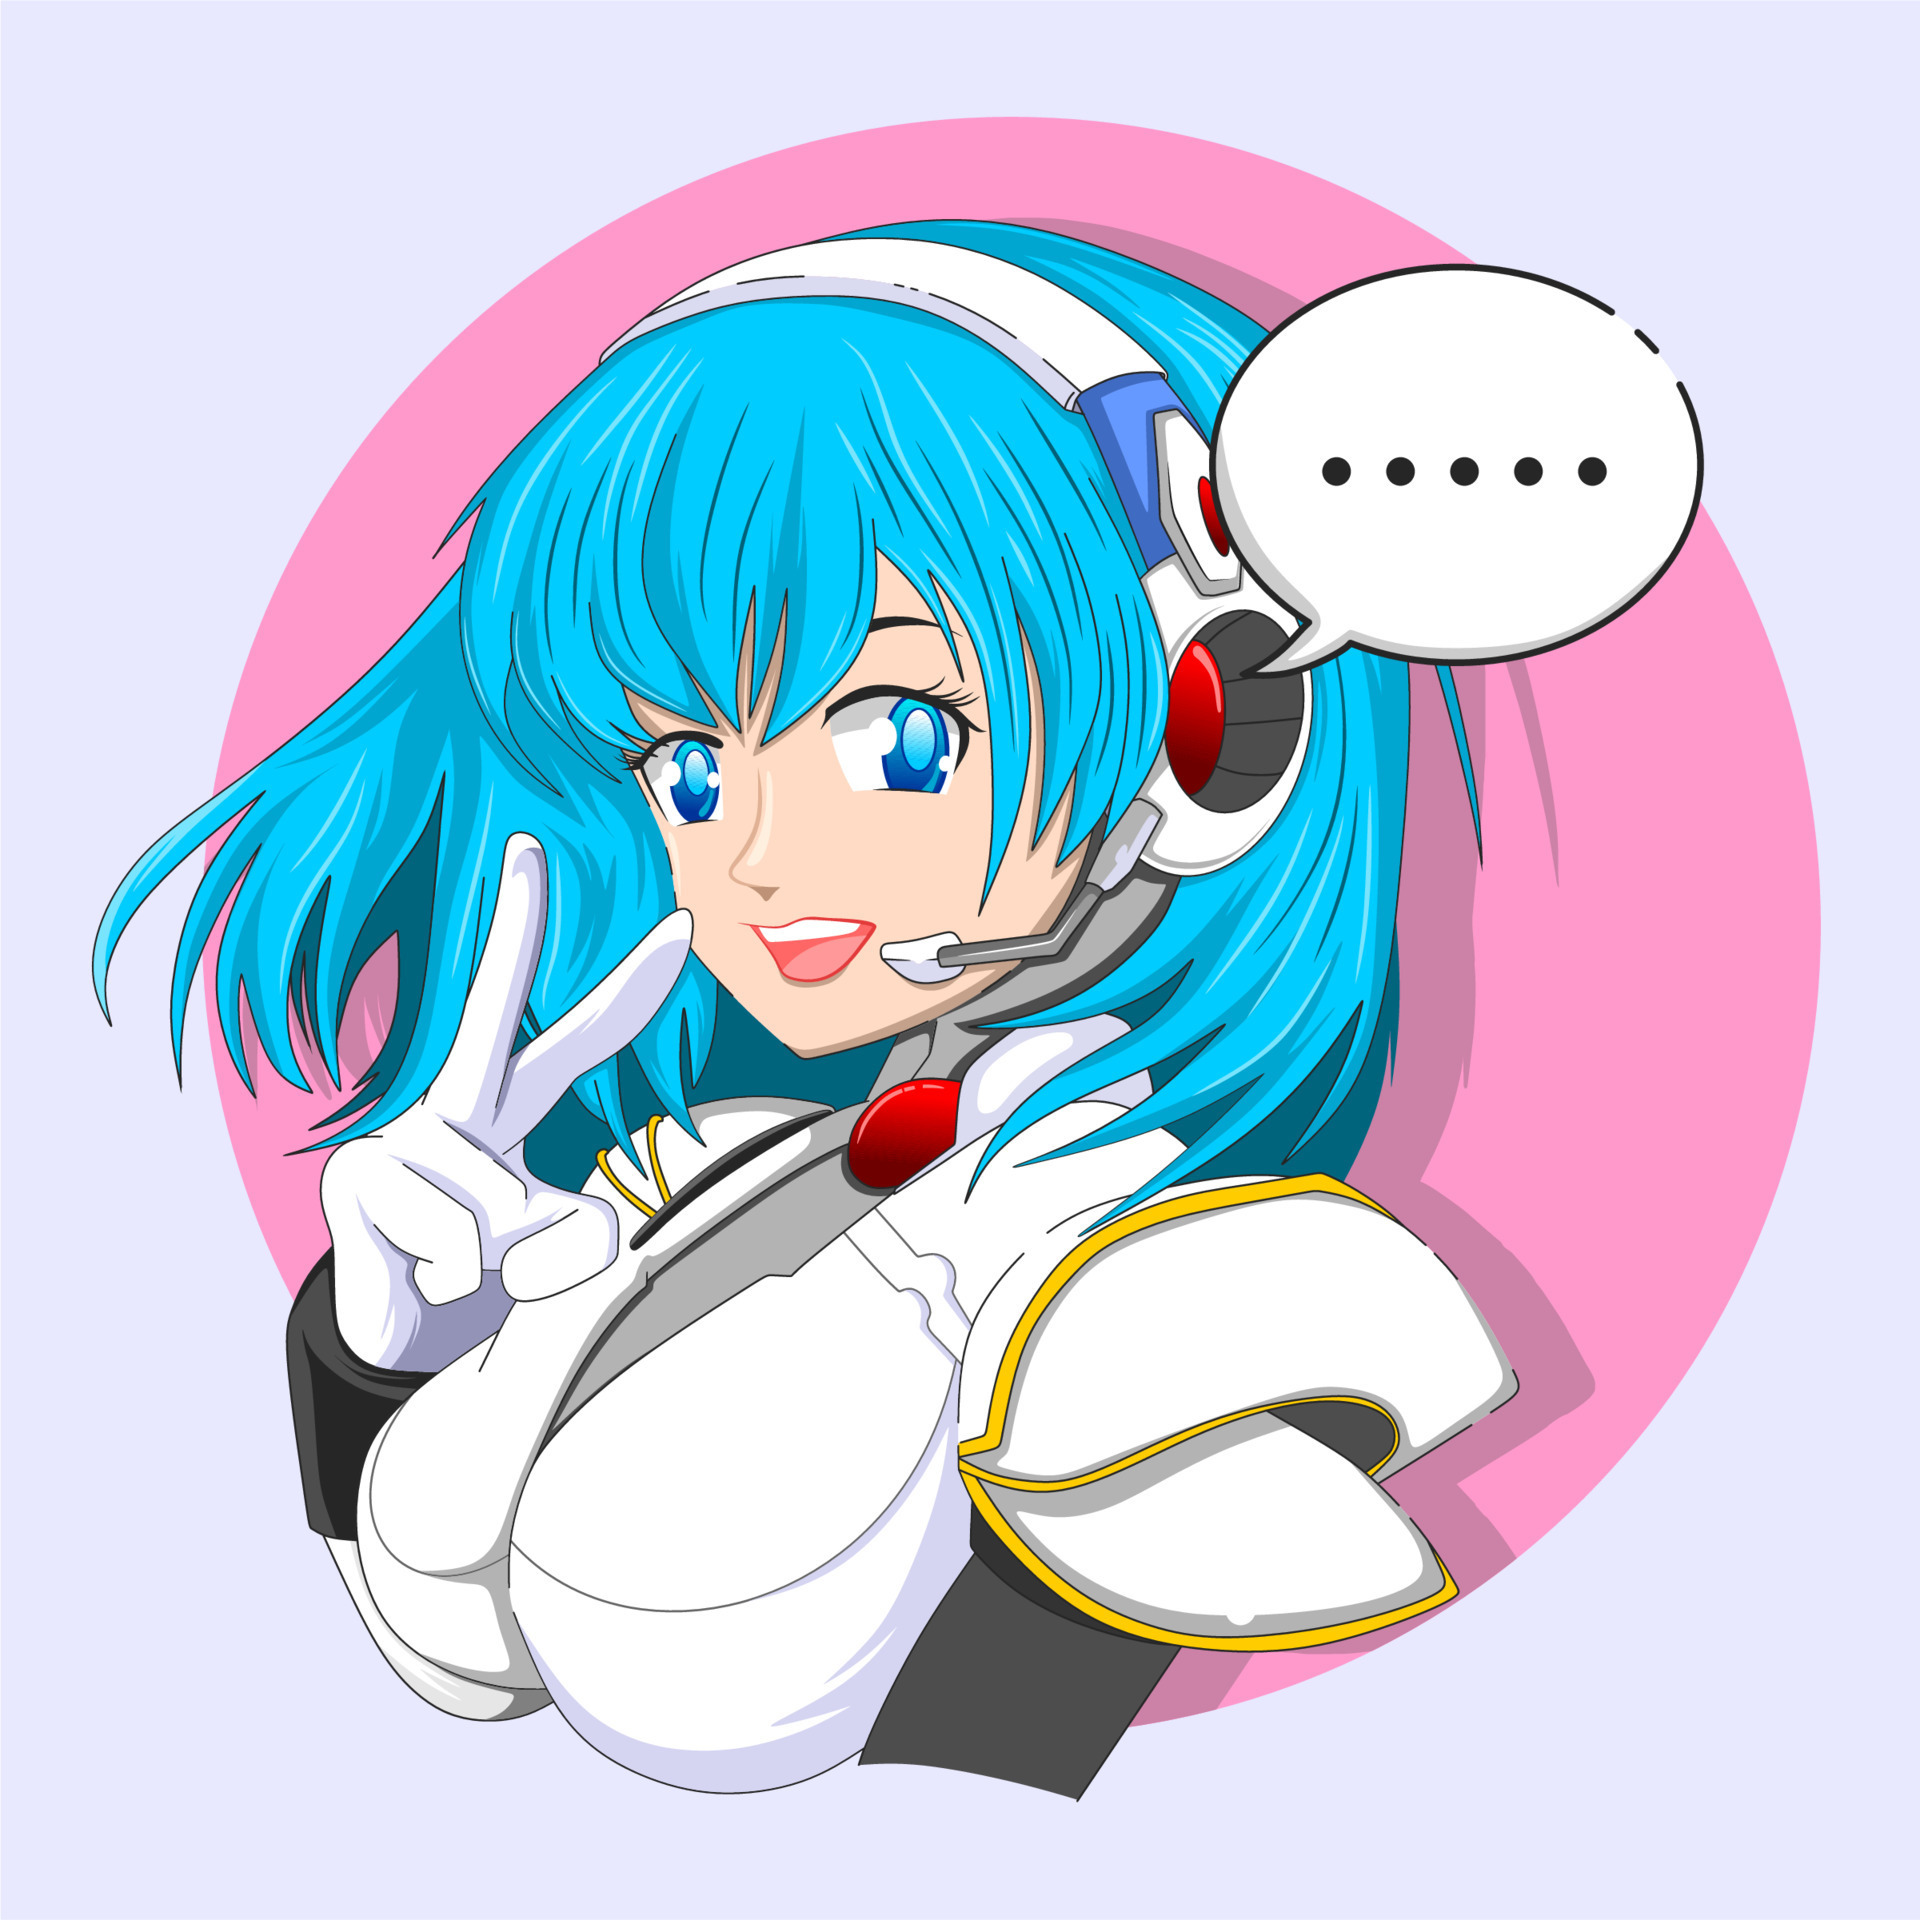 manga anime girl talking by headset for Call center, hotline vector  illustration 8326862 Vector Art at Vecteezy